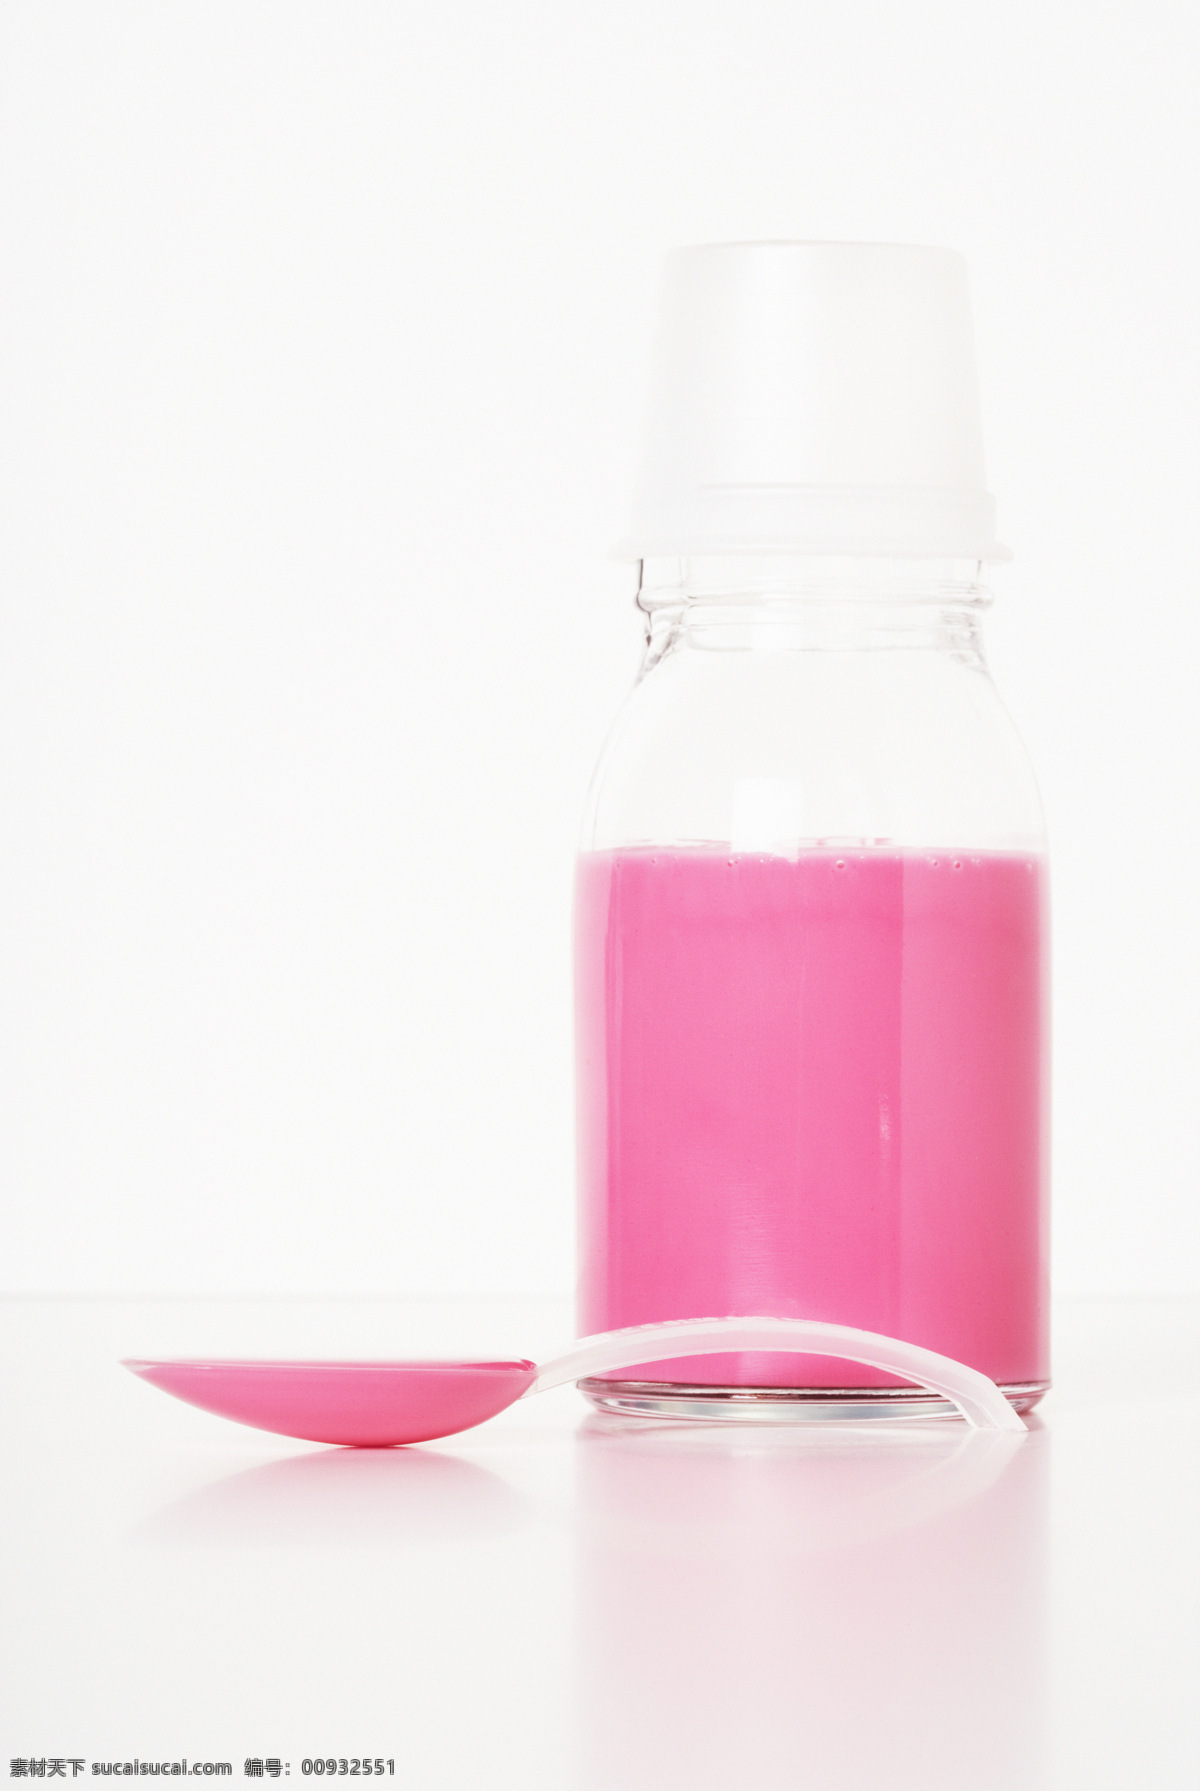 瓶子 内 粉色 试剂 勺子 医疗护理 医学 医疗 健康 现代科技